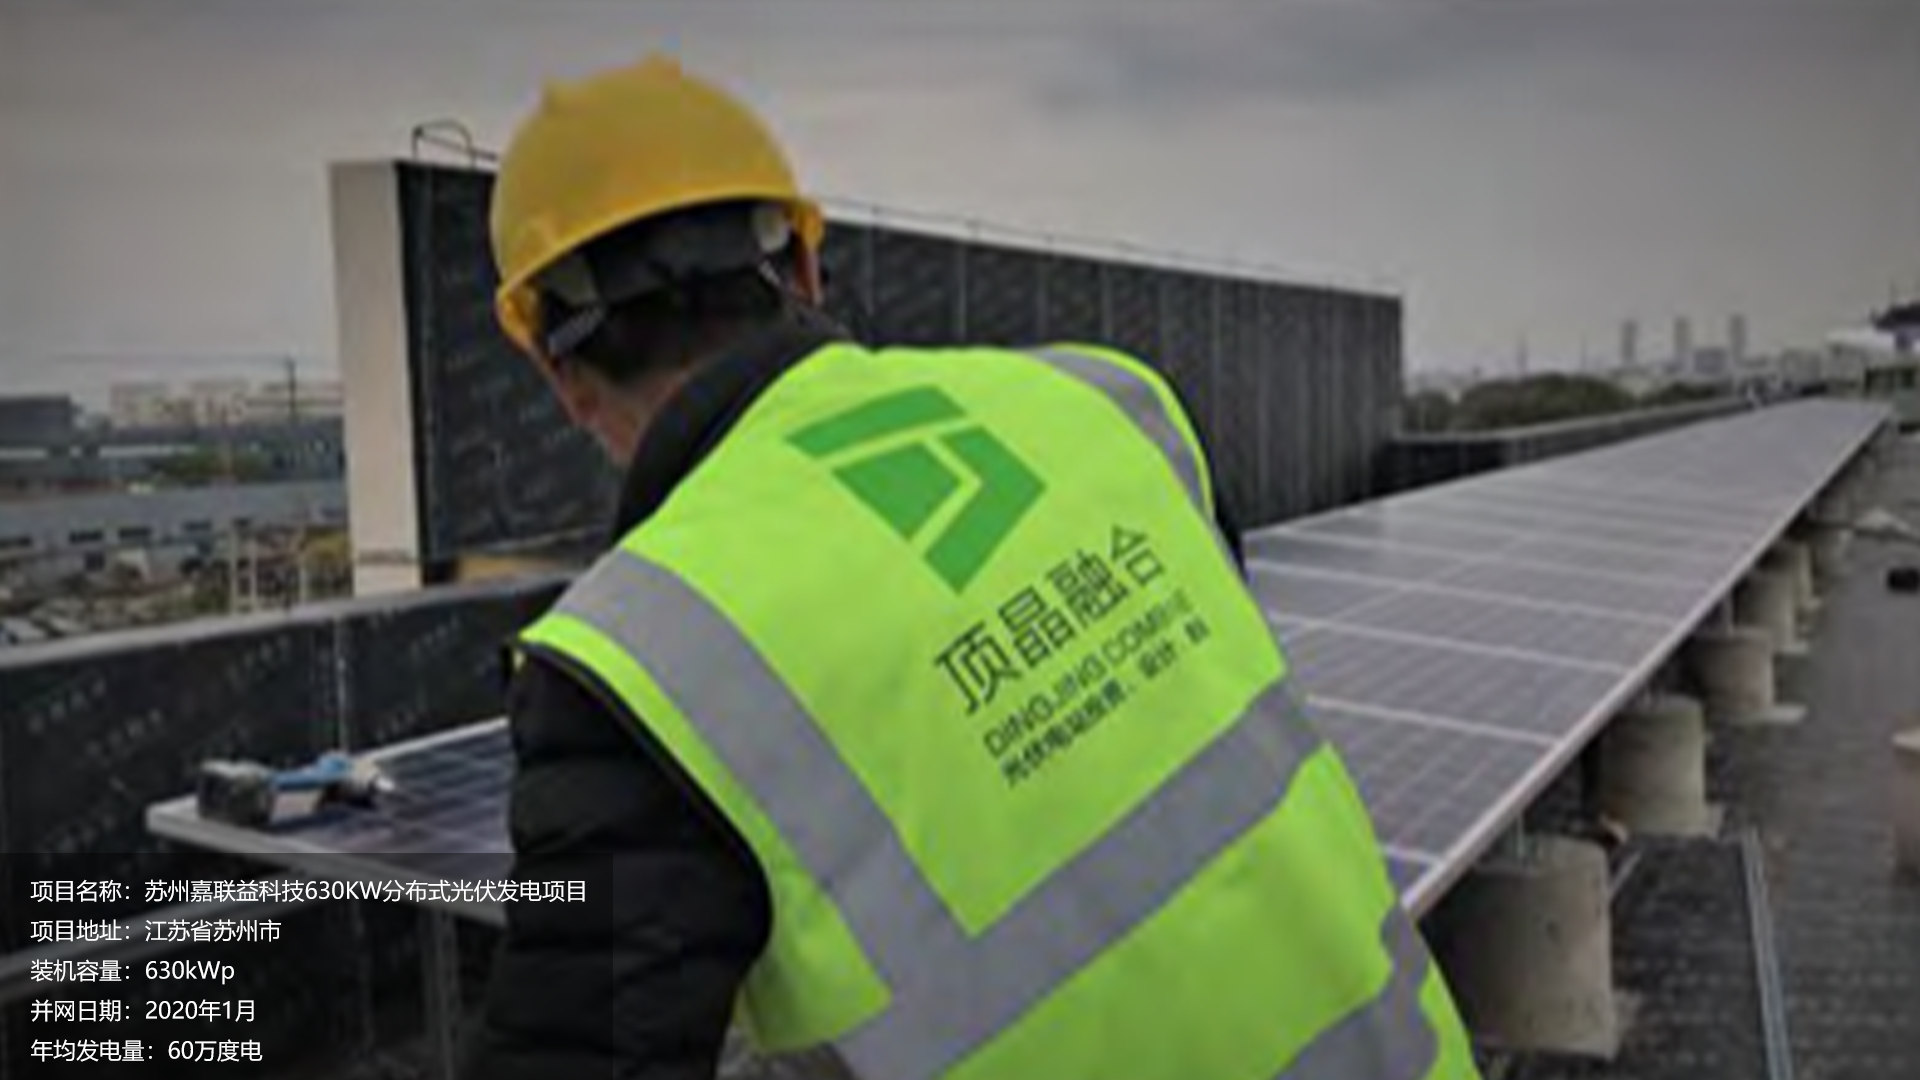 苏州嘉联益项目总装机容量630KW，项目位于江苏省苏州市，于2020年1月并网发电，年均发电量约60万度。			